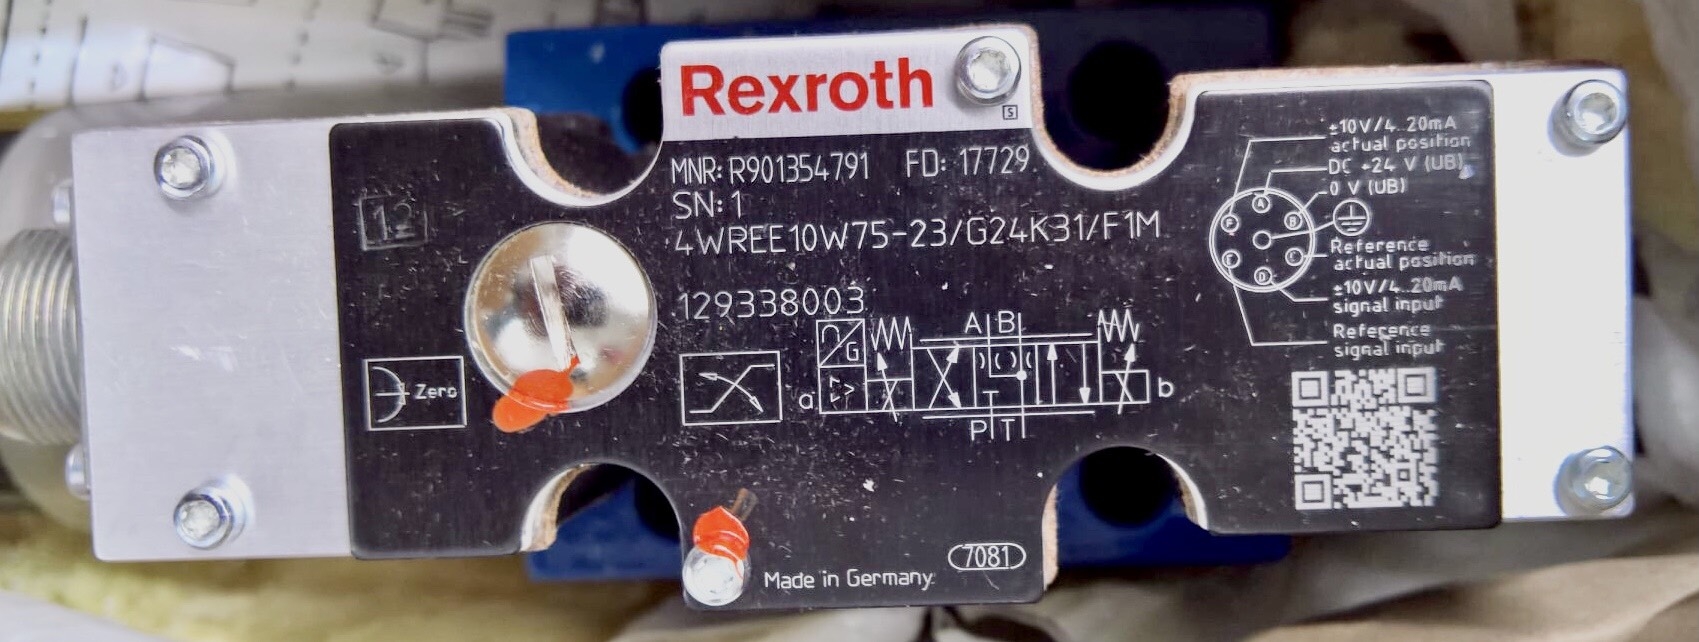 REXROTH 4WREE10W75-23/G24K31/F1M